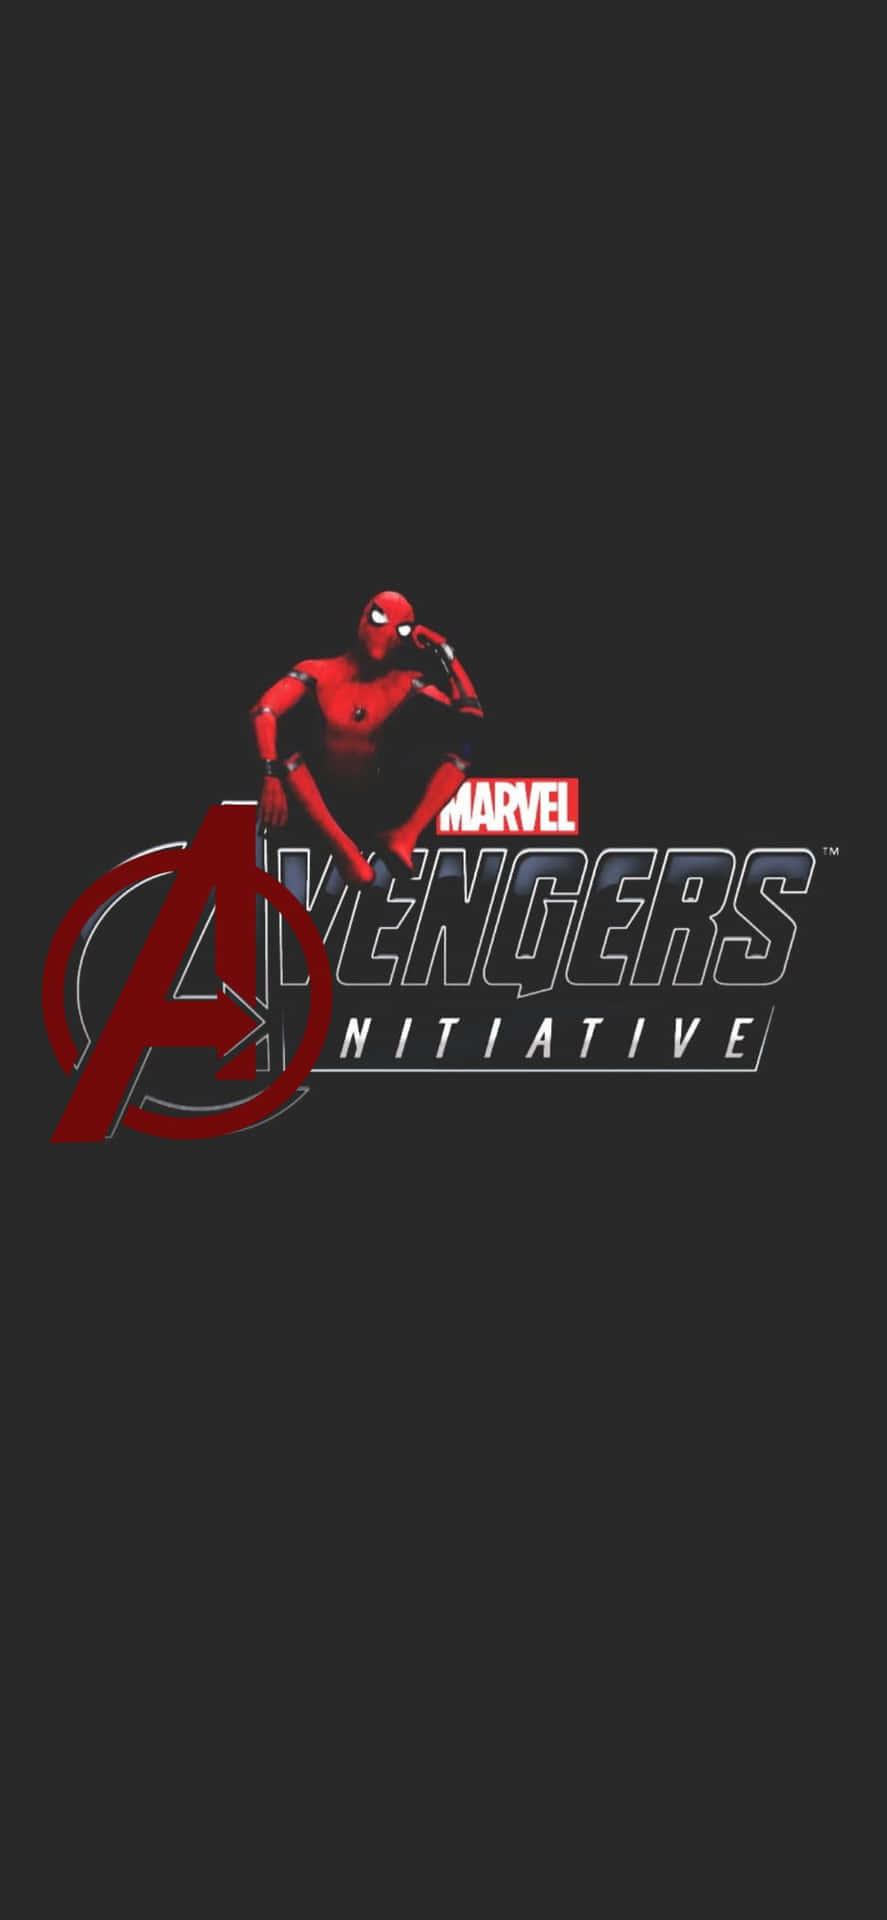 Sfondoiphone Xs Con L'iniziativa Degli Avengers E Spider-man